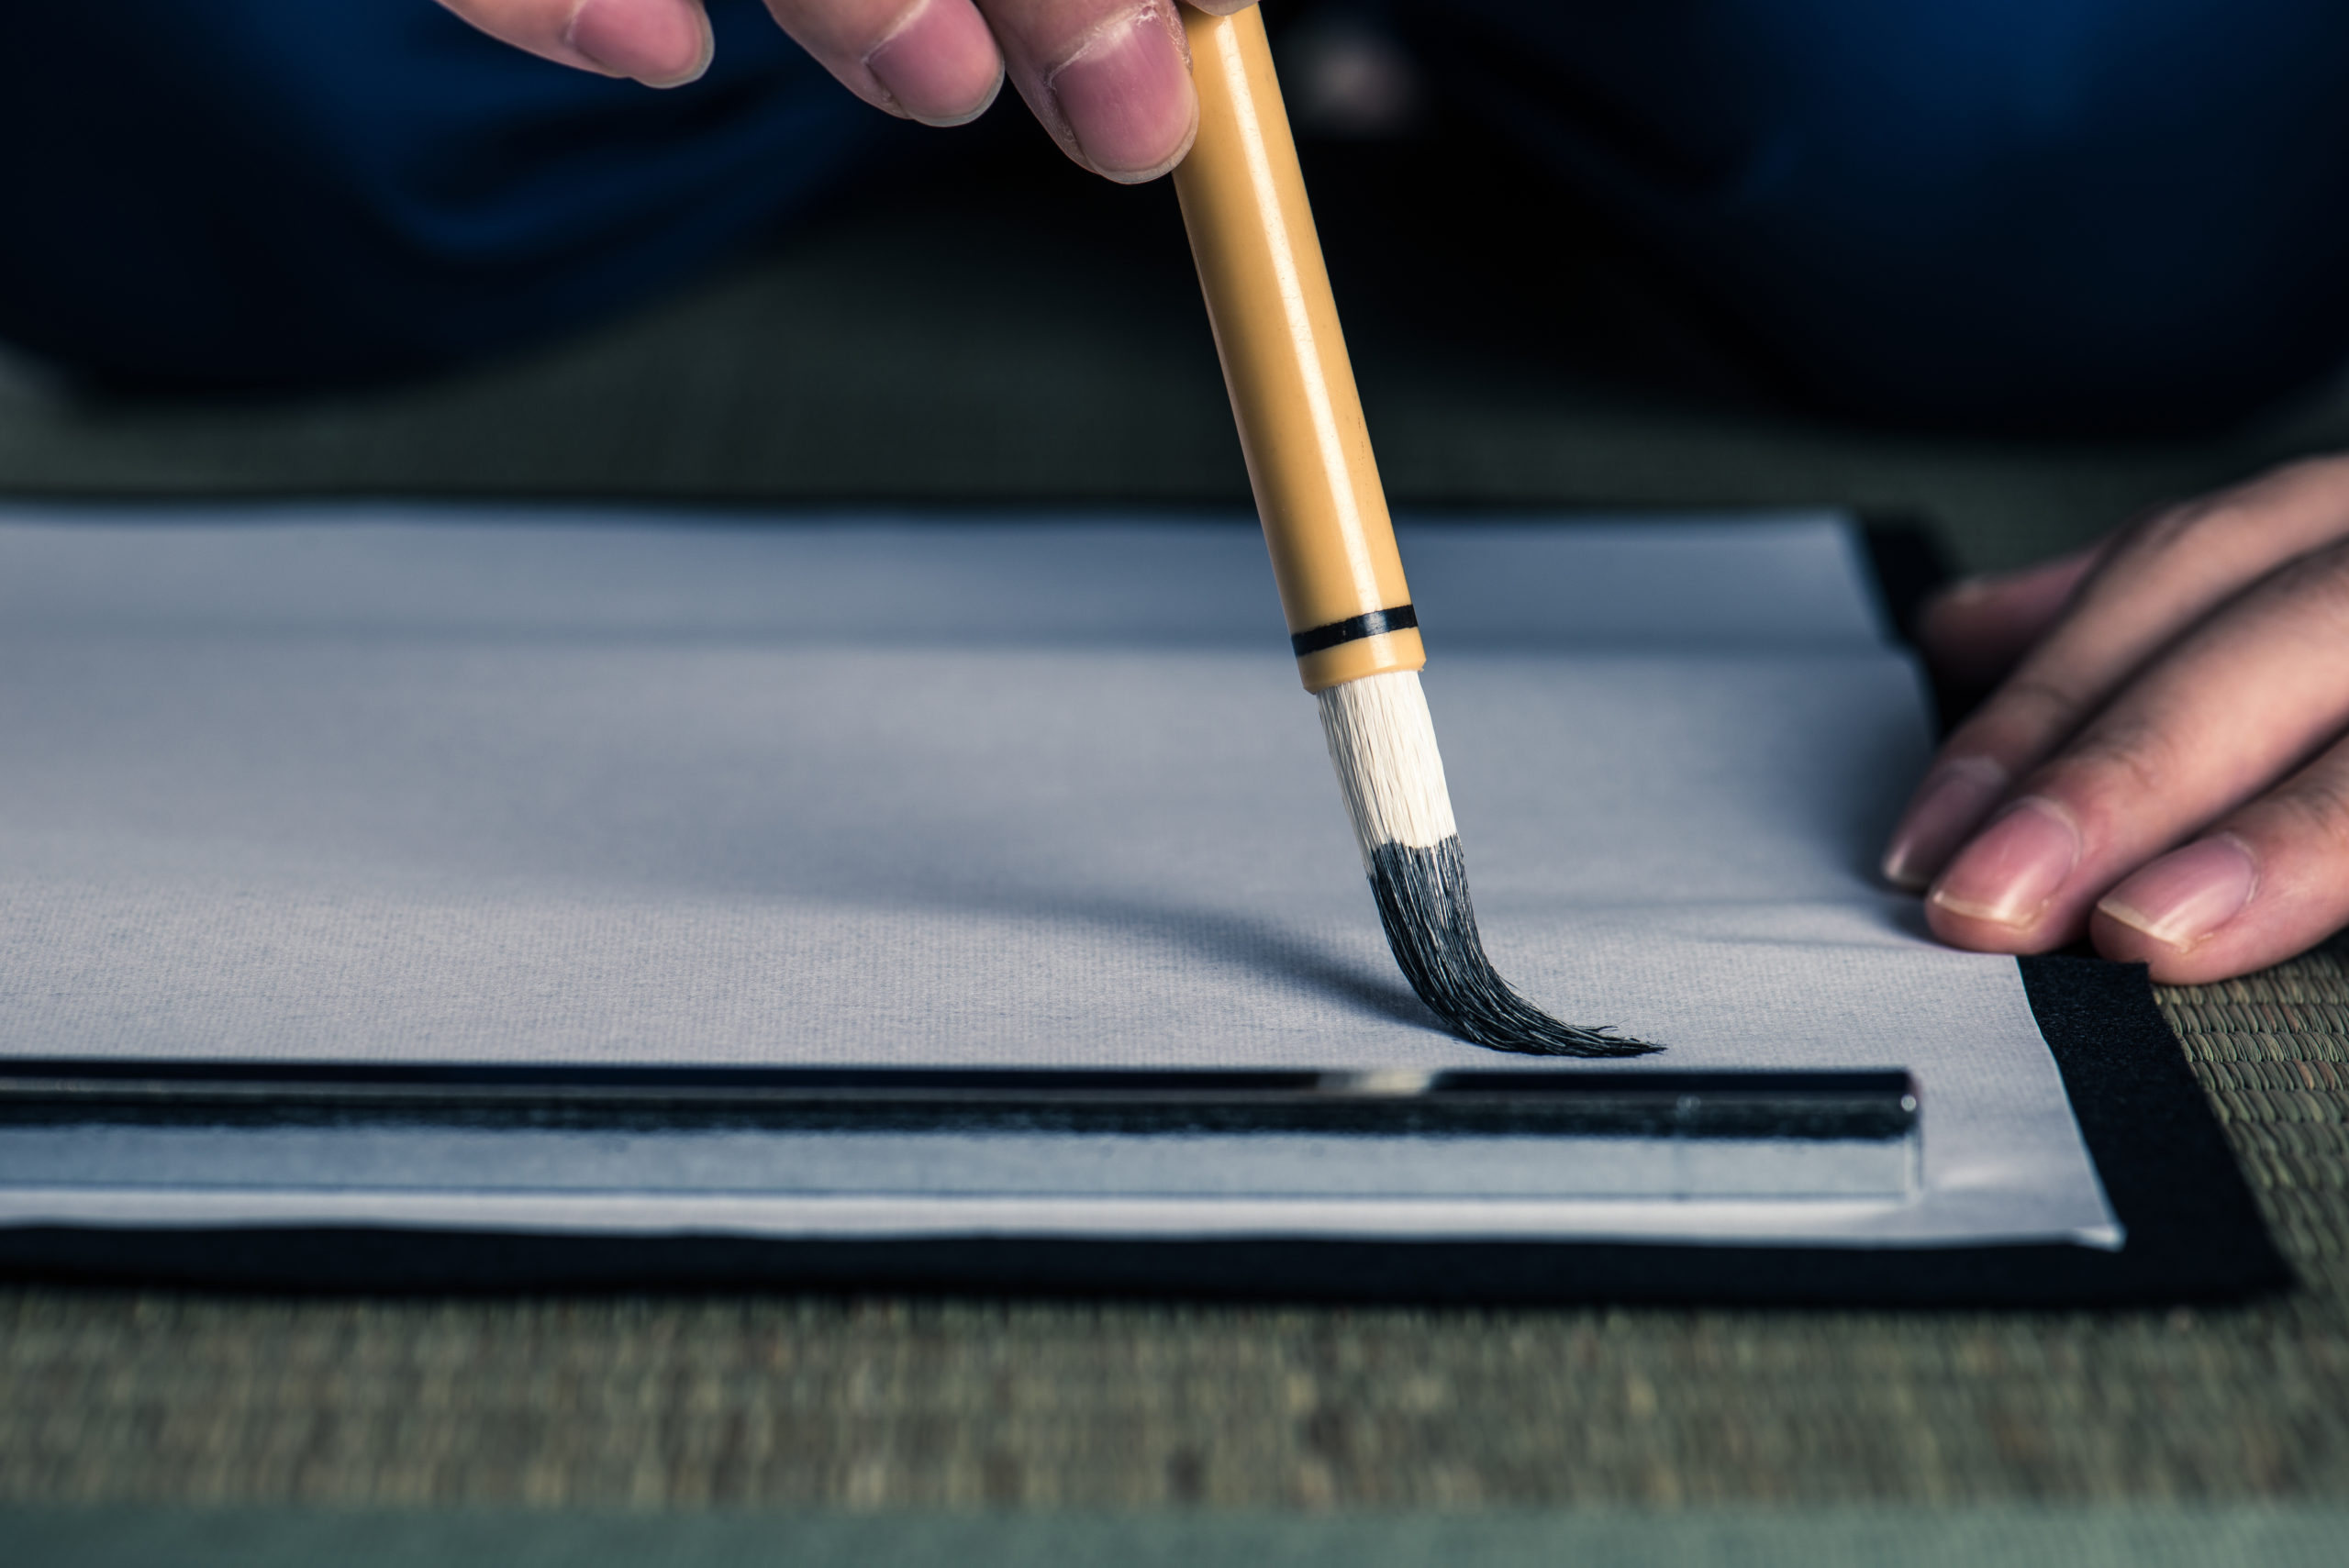 日本の伝統的工芸品「熊野筆」が書道筆をアップデート アイコニックデザインの新書道筆ブランド「TONSU」を発表